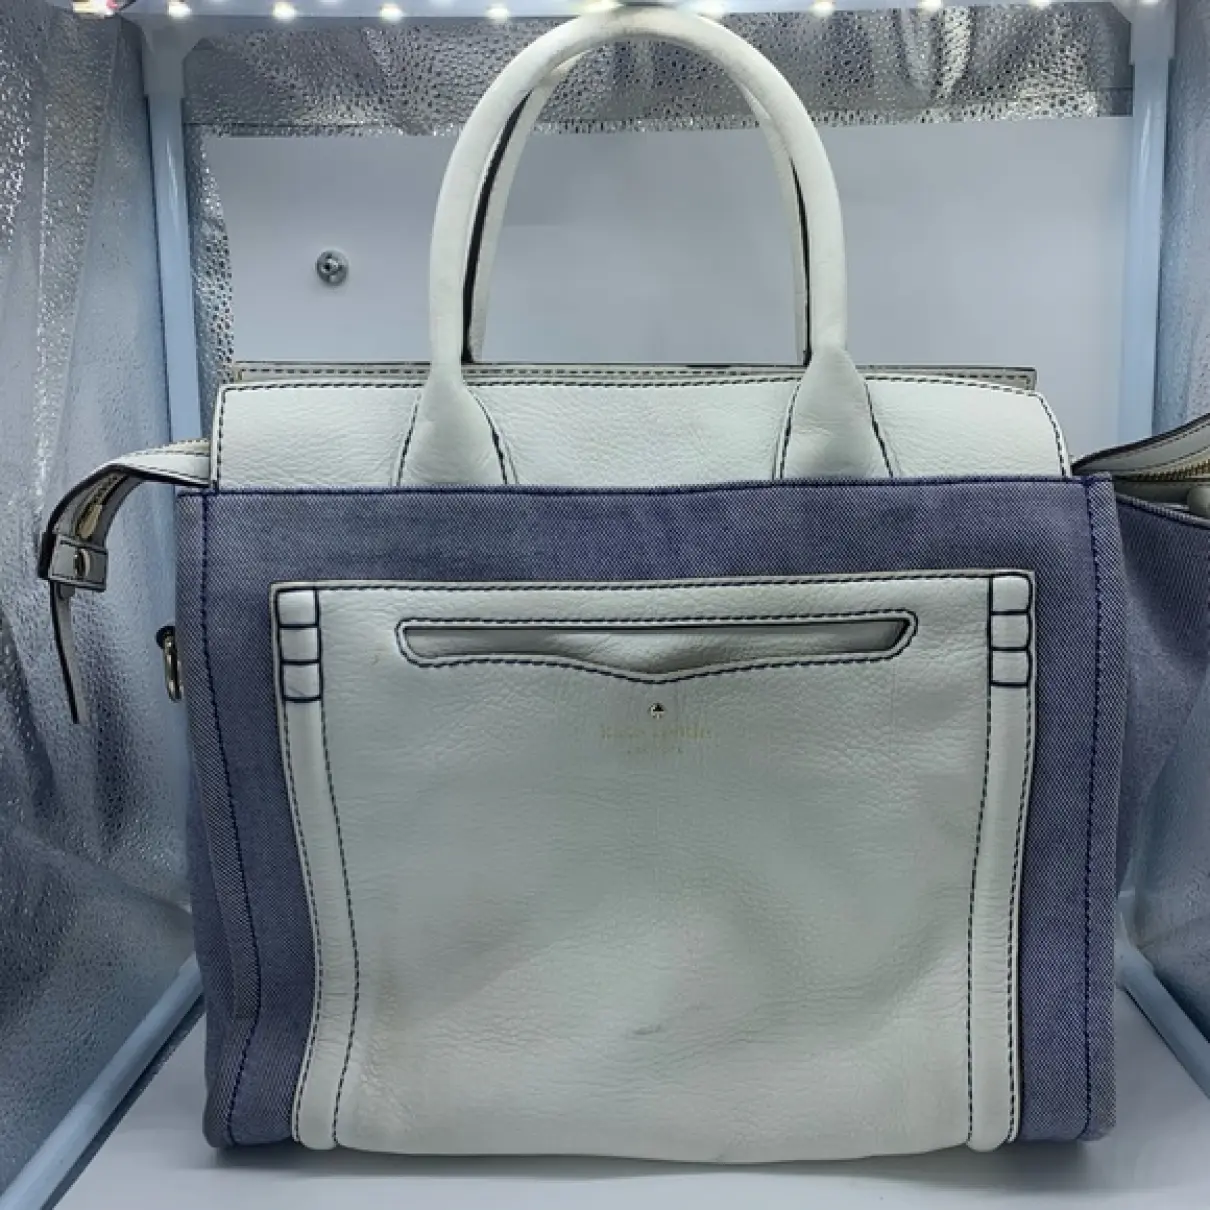 Luxury Kate Spade Handbags Women - Vintage